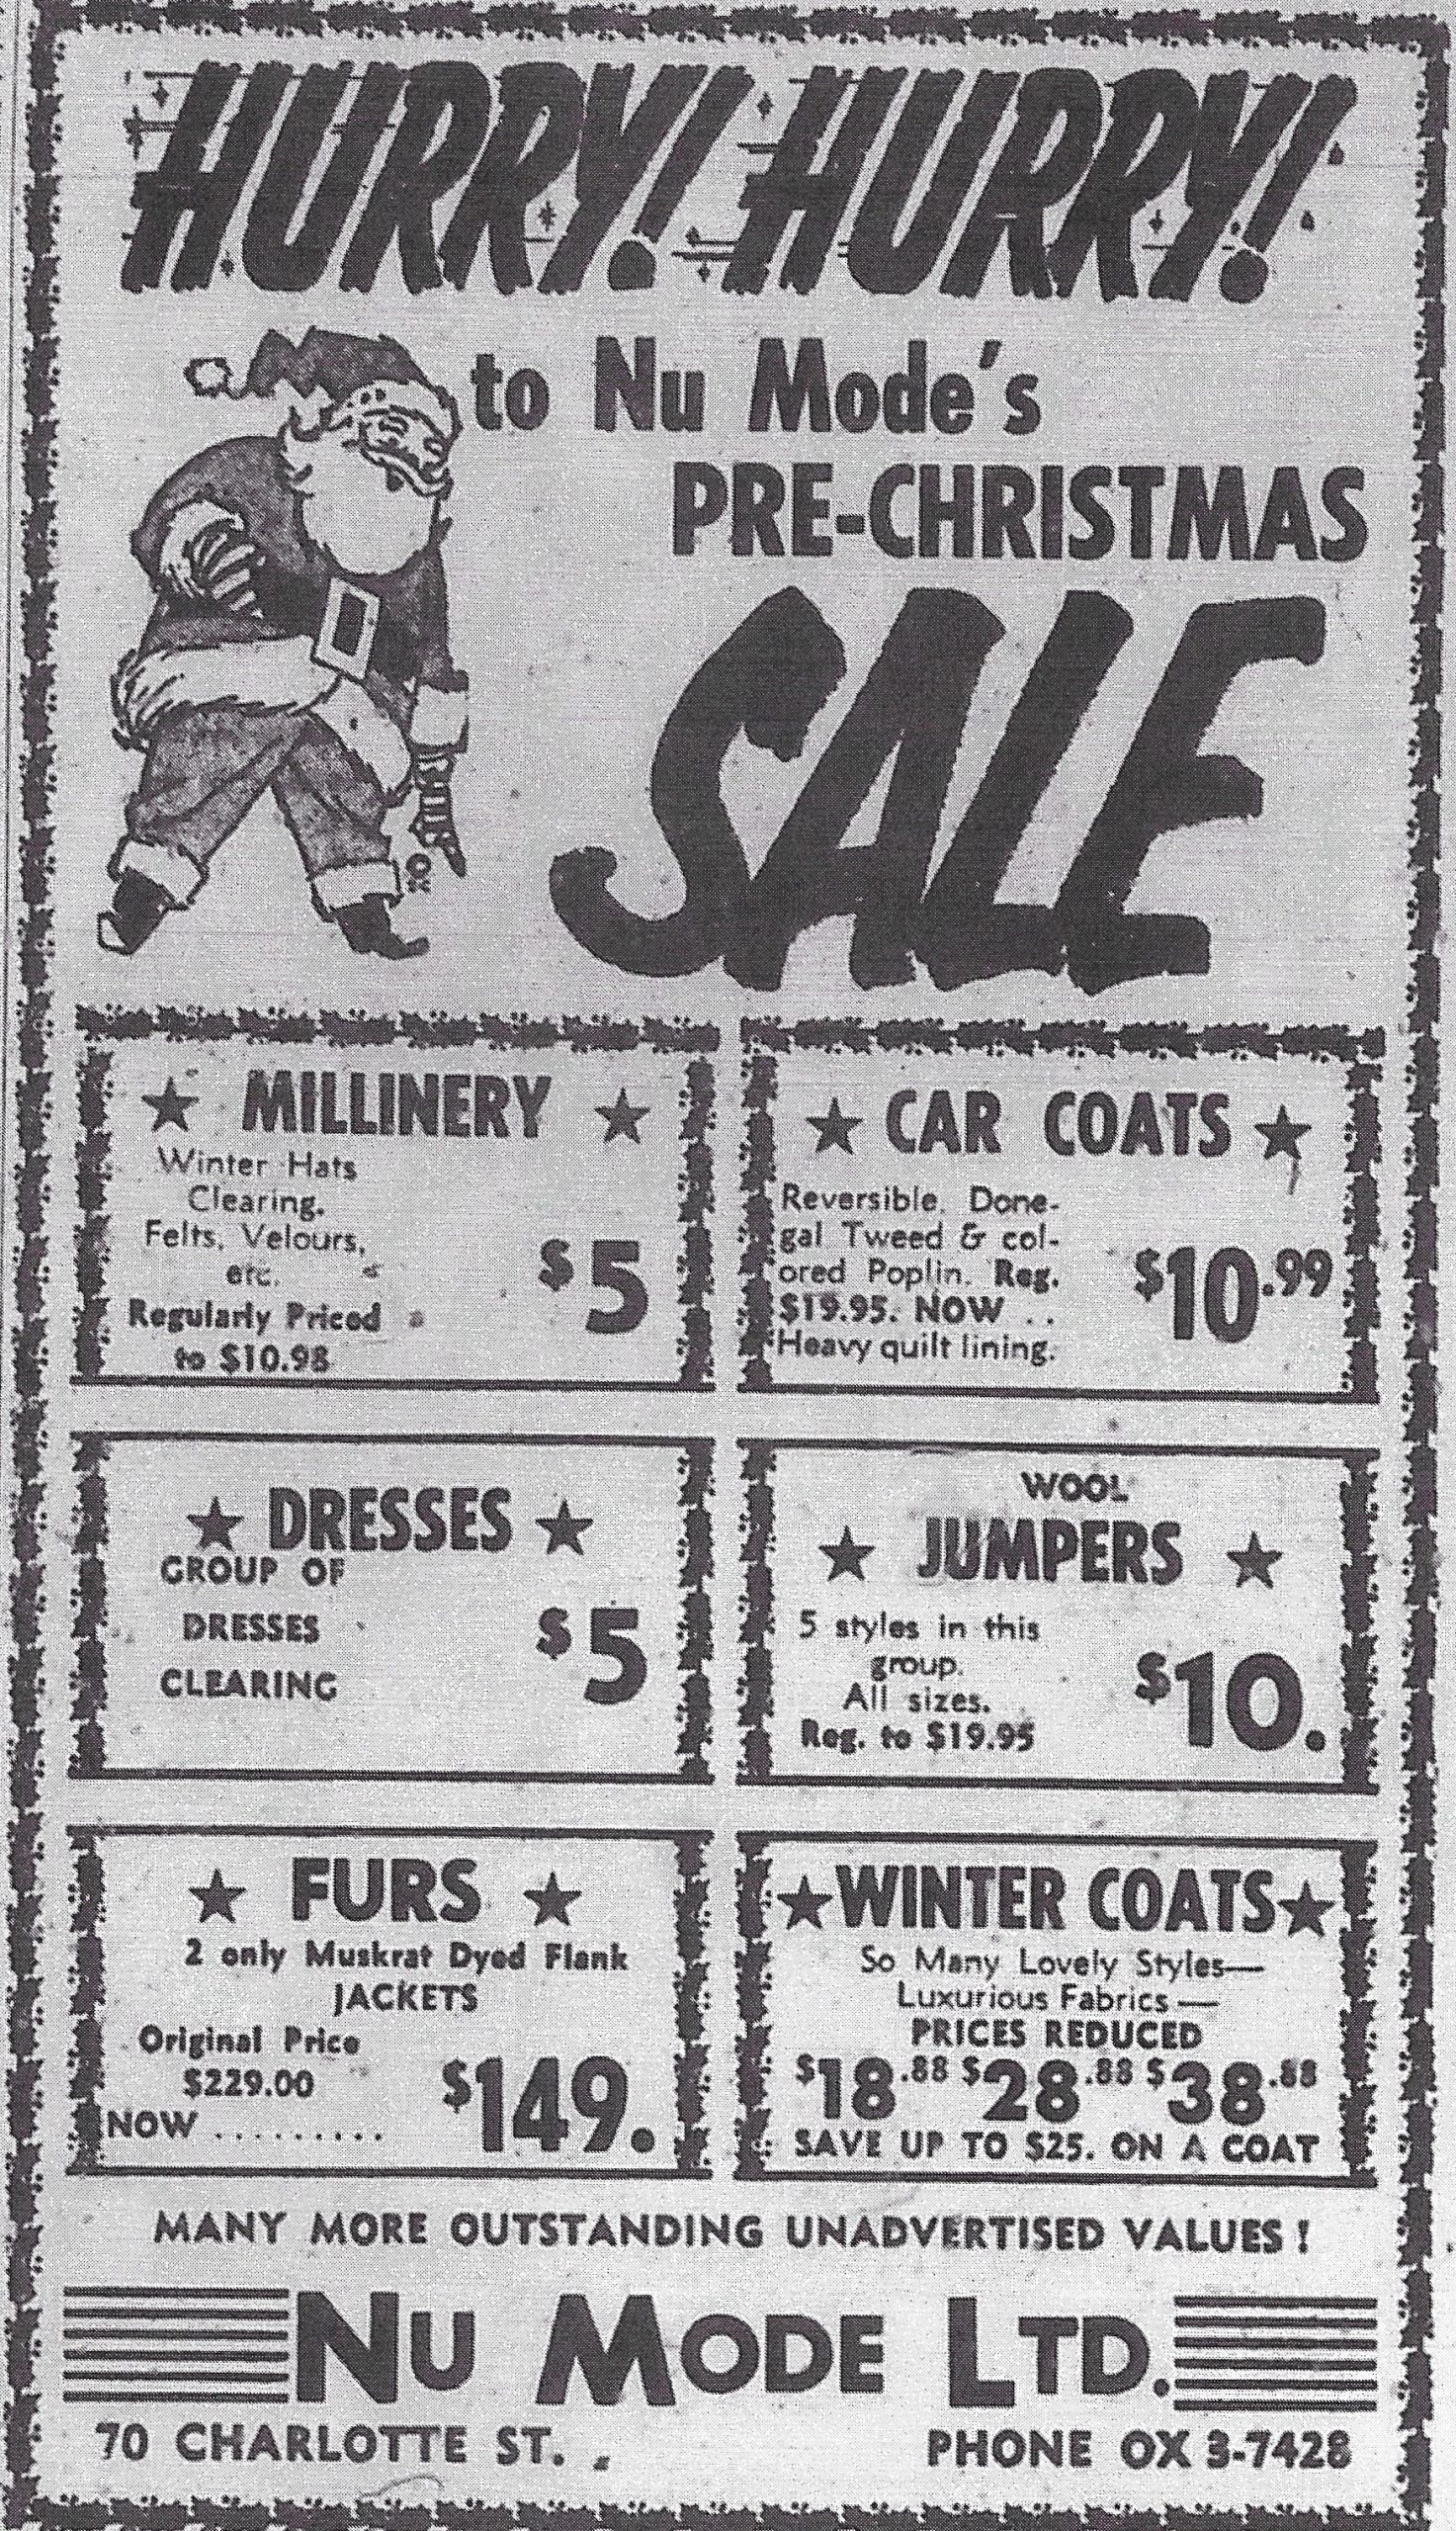 Publicité de presse intitulée « Hurry! Hurry! To NuMode’s Pre-Christmas Sale » annonçant des prix spéciaux pour des chapeaux, des paletots d’auto, des robes, des chandails, des fourrures et des manteaux d’hiver pour femmes.